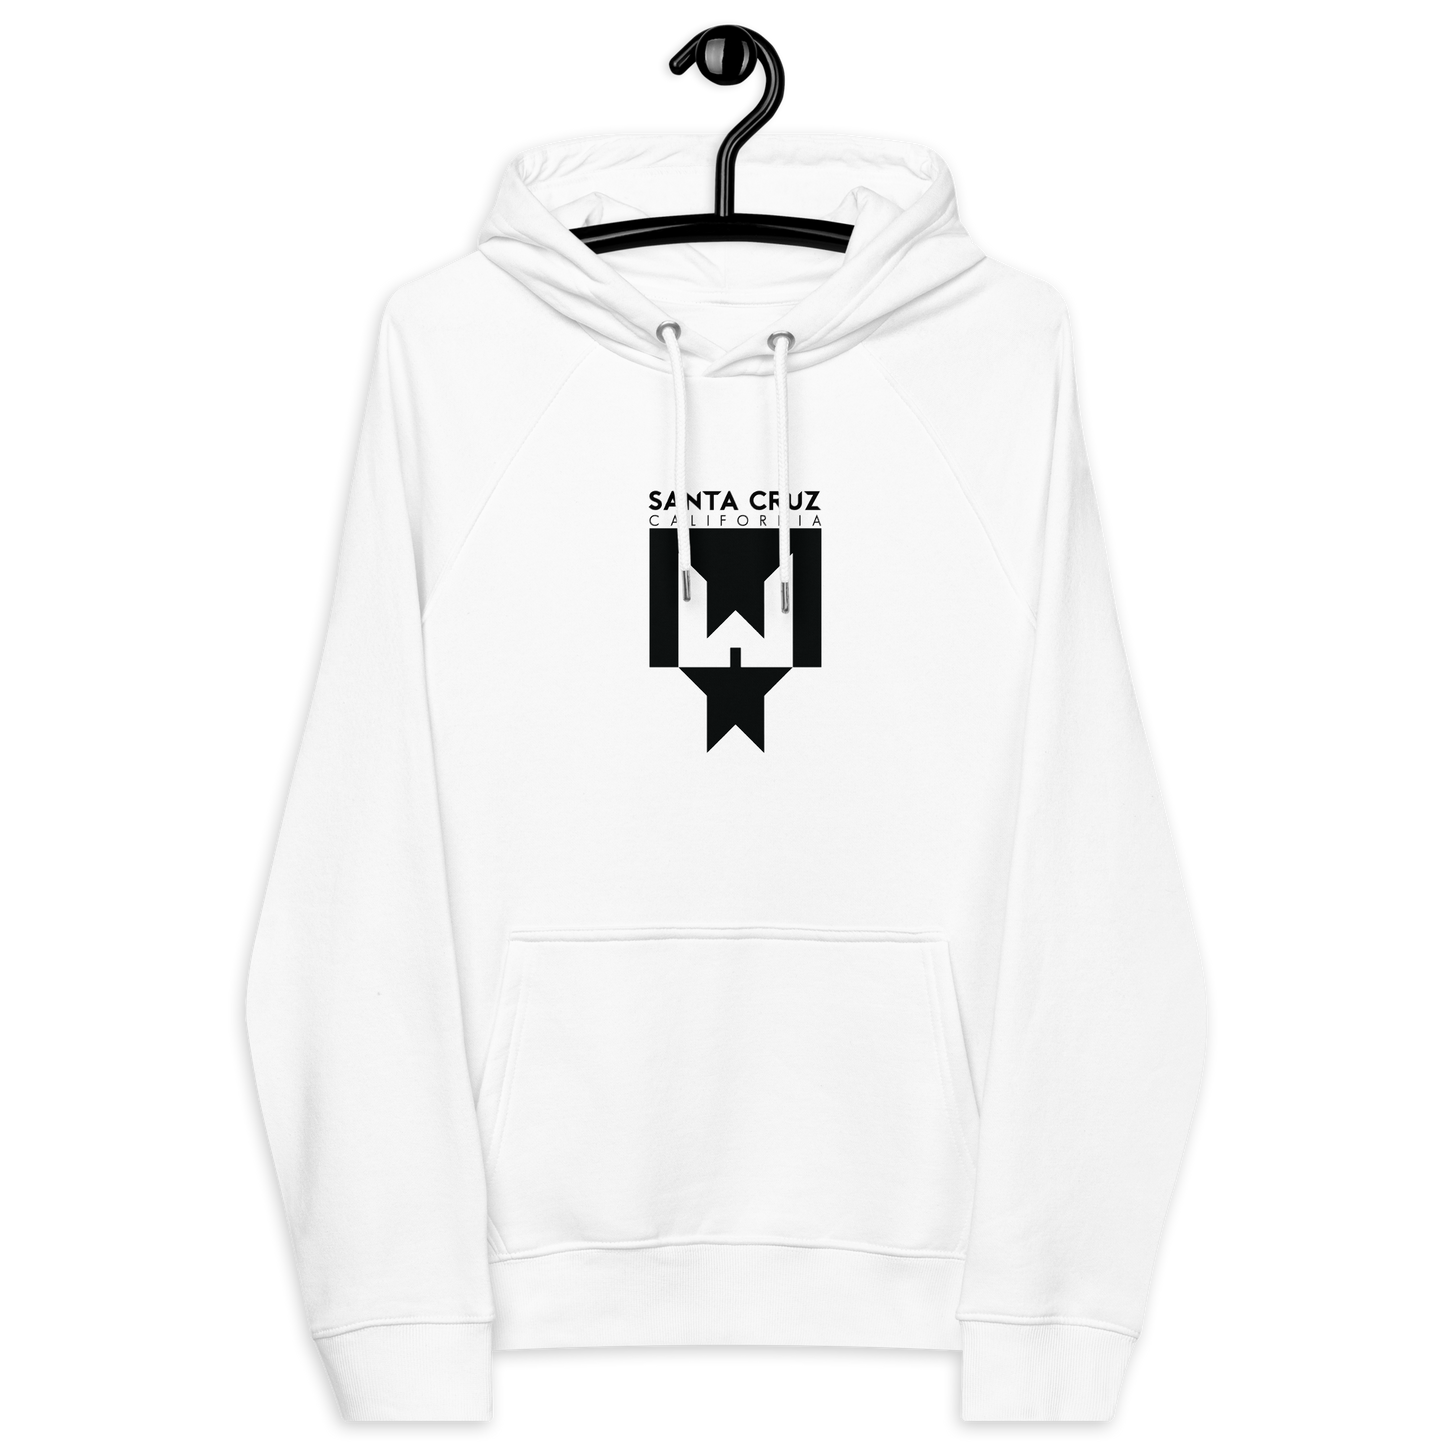 Whbb — white unisex eco raglan hoodie